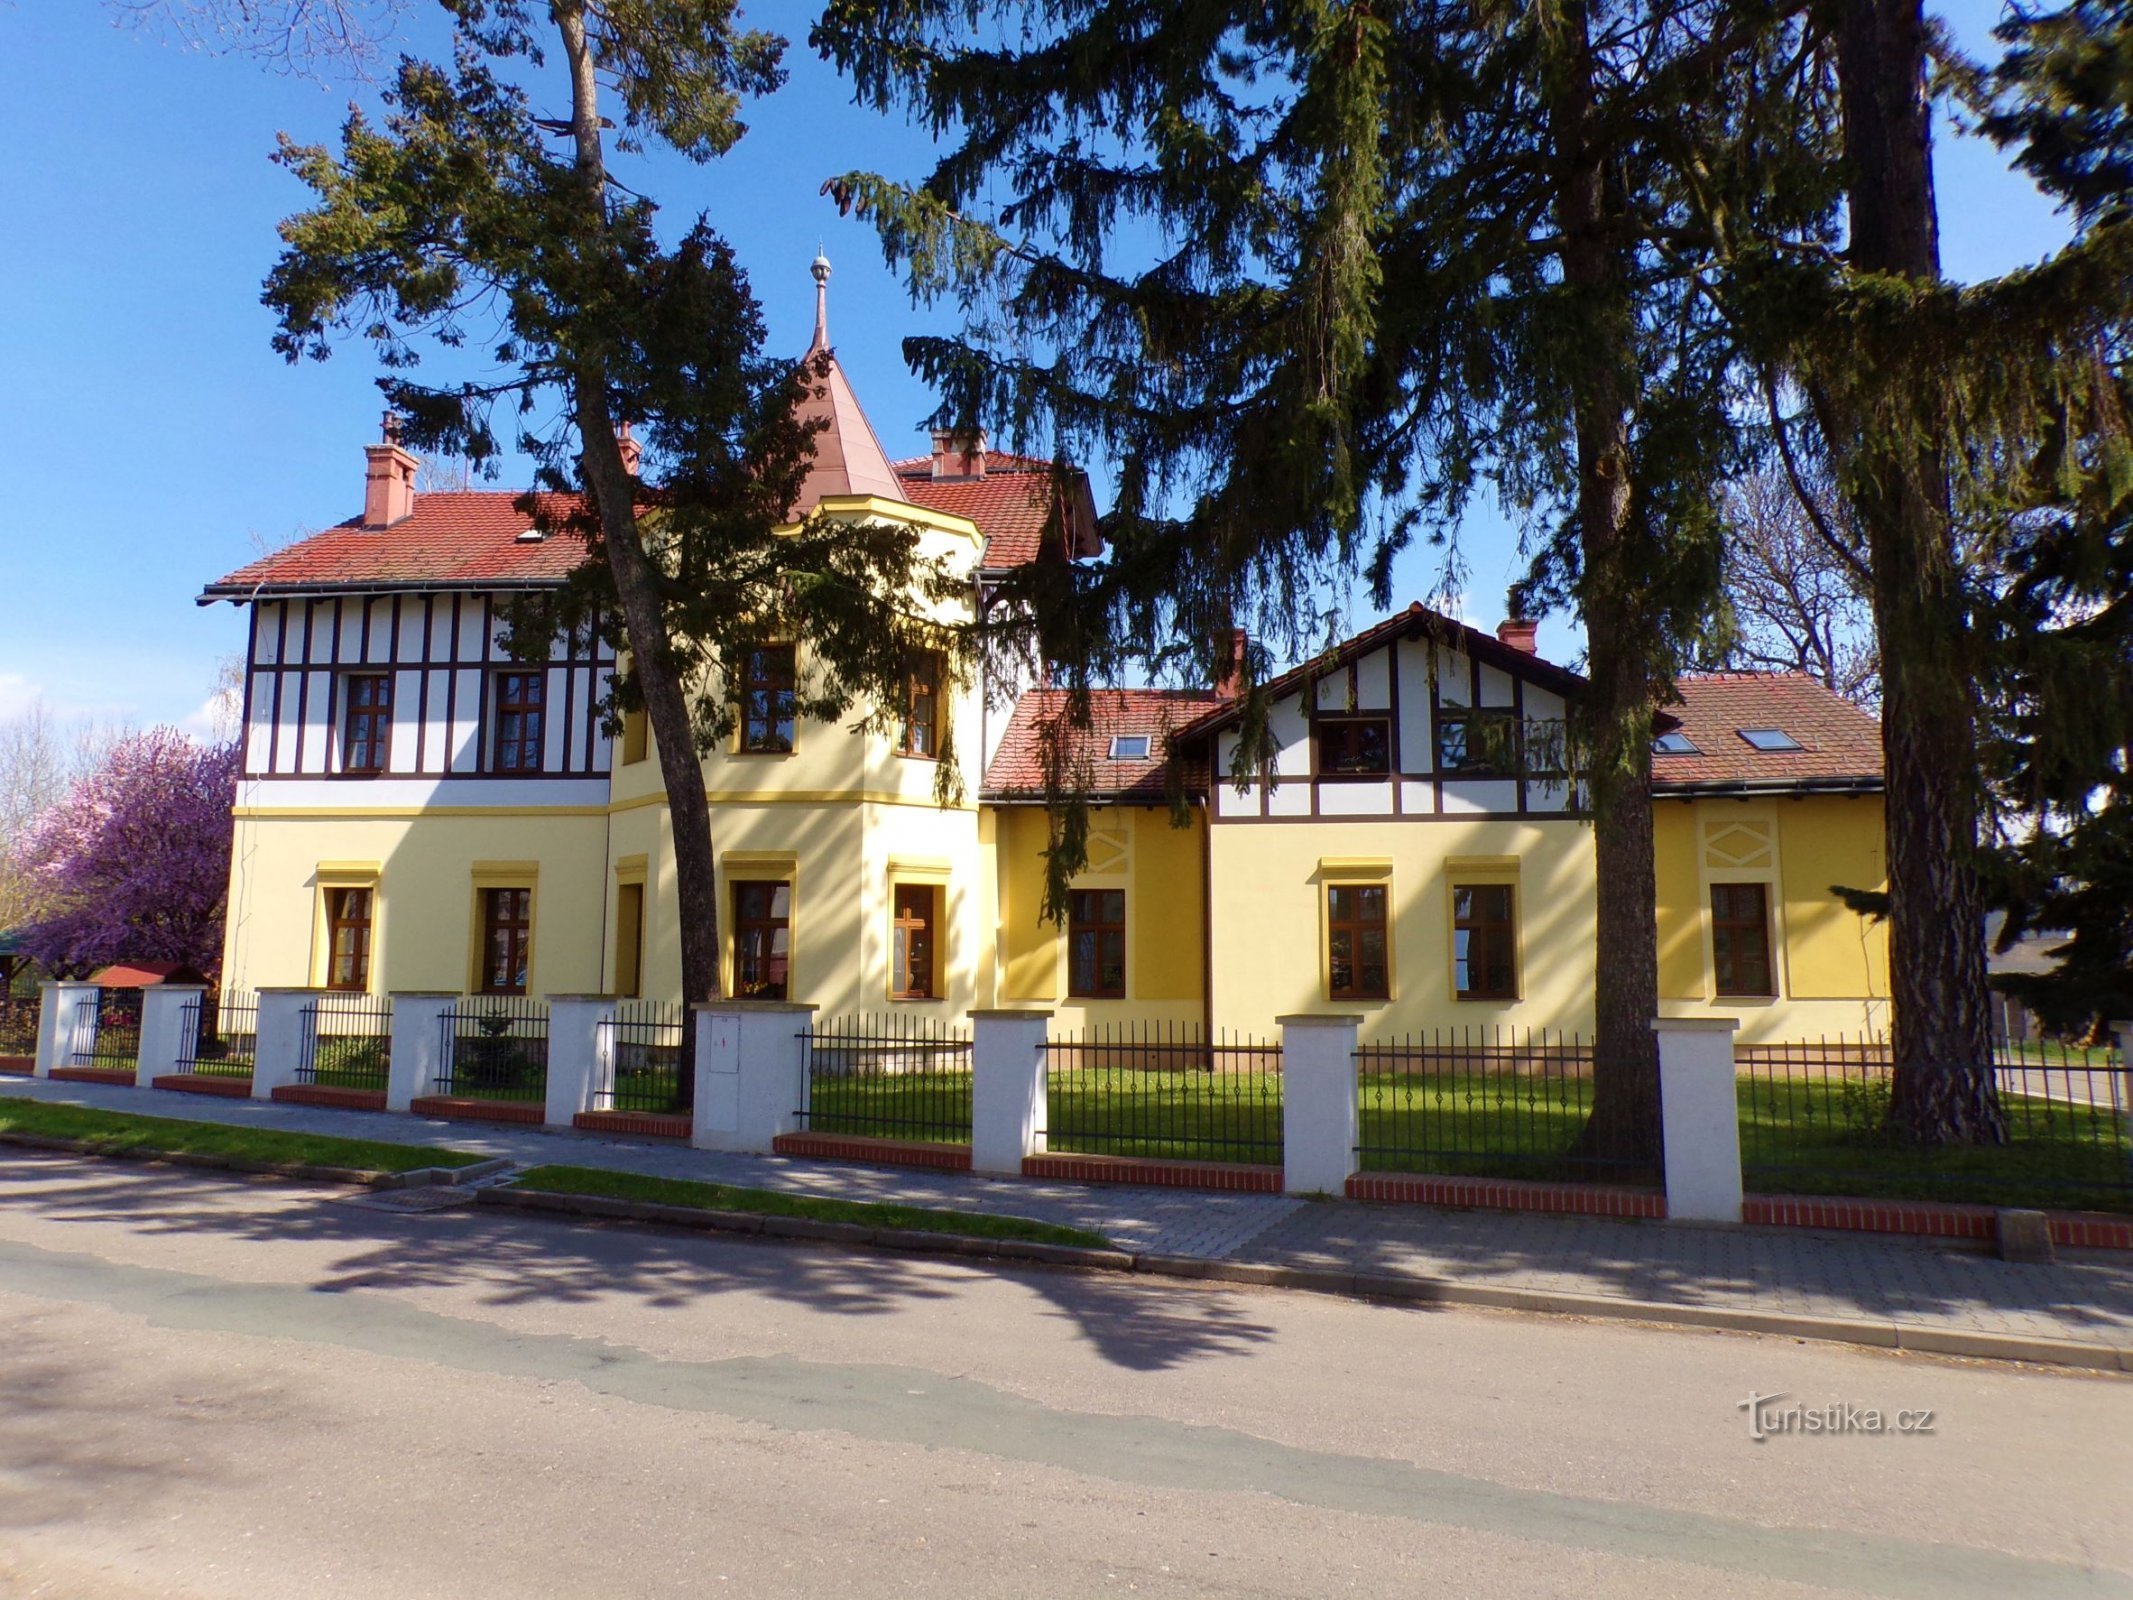 Malmann's villa No. 63 (Skřivany, 30.4.2021/XNUMX/XNUMX)